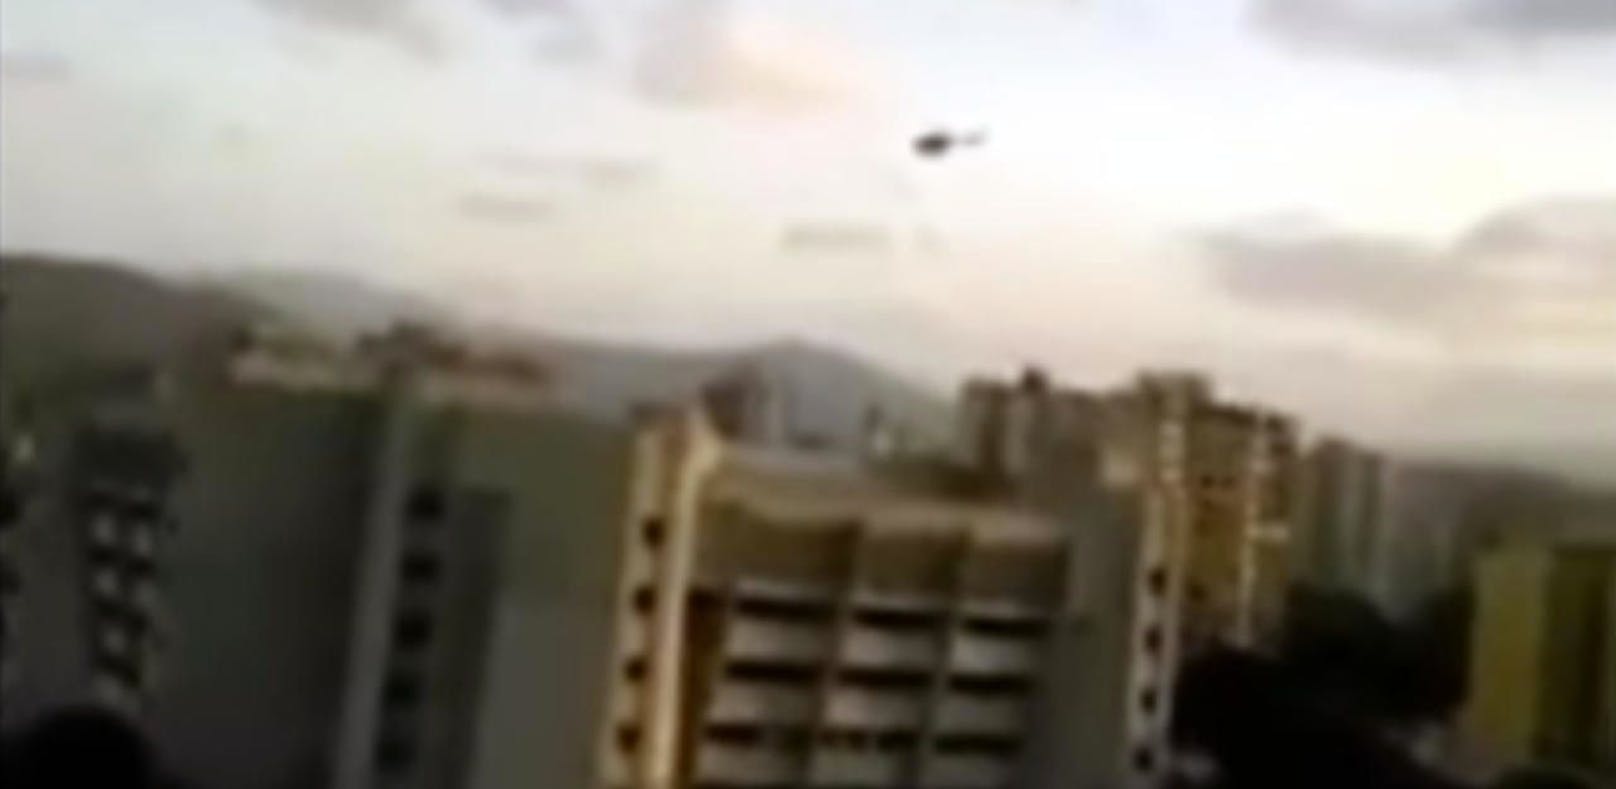 Venezuela: Helikopter wirft Granaten auf Gericht